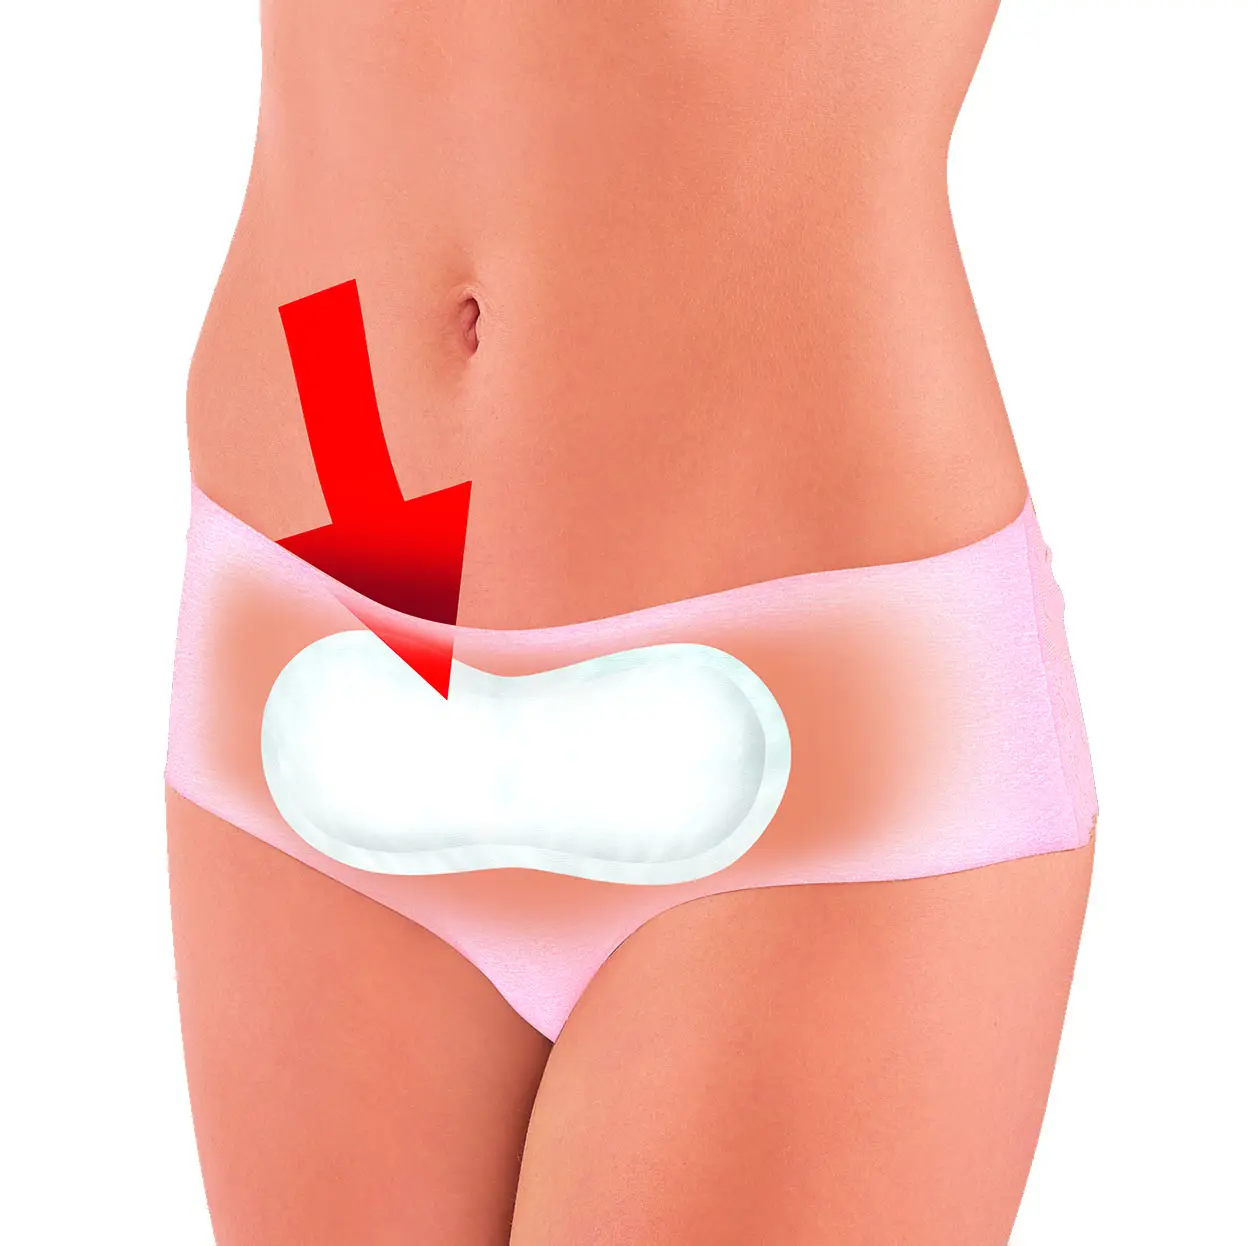 Menstruele Hitte Pleister Voor Vrouw Periode Kramp Zorg Voor 12H Pasta Op De Huid Direct Lucht Geactiveerde Warmte Patch Menstruatie Pleister